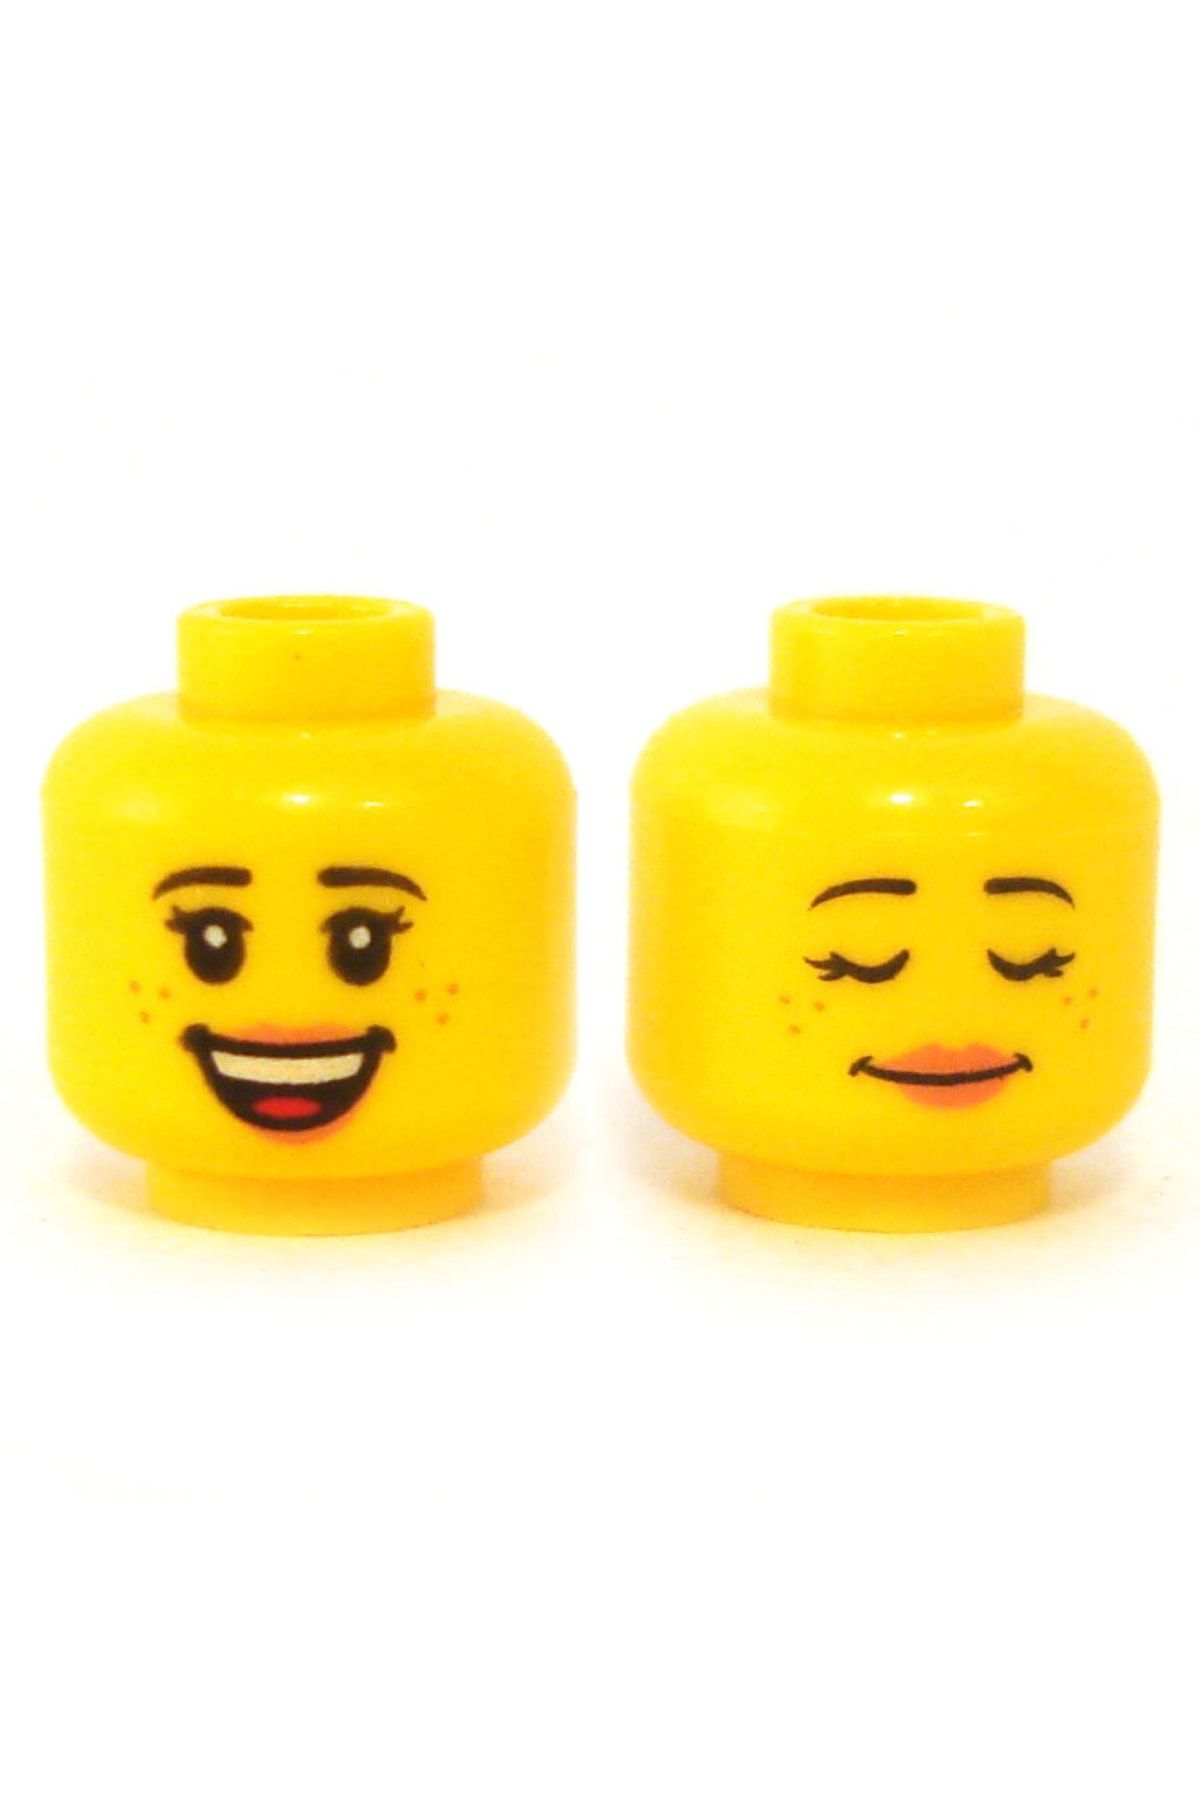 LEGO Orjinal Aksesuar Custom Minifigür Minifigure Çift Surat Gözleri Kapalı Gülen Kadın Sarı Kafa